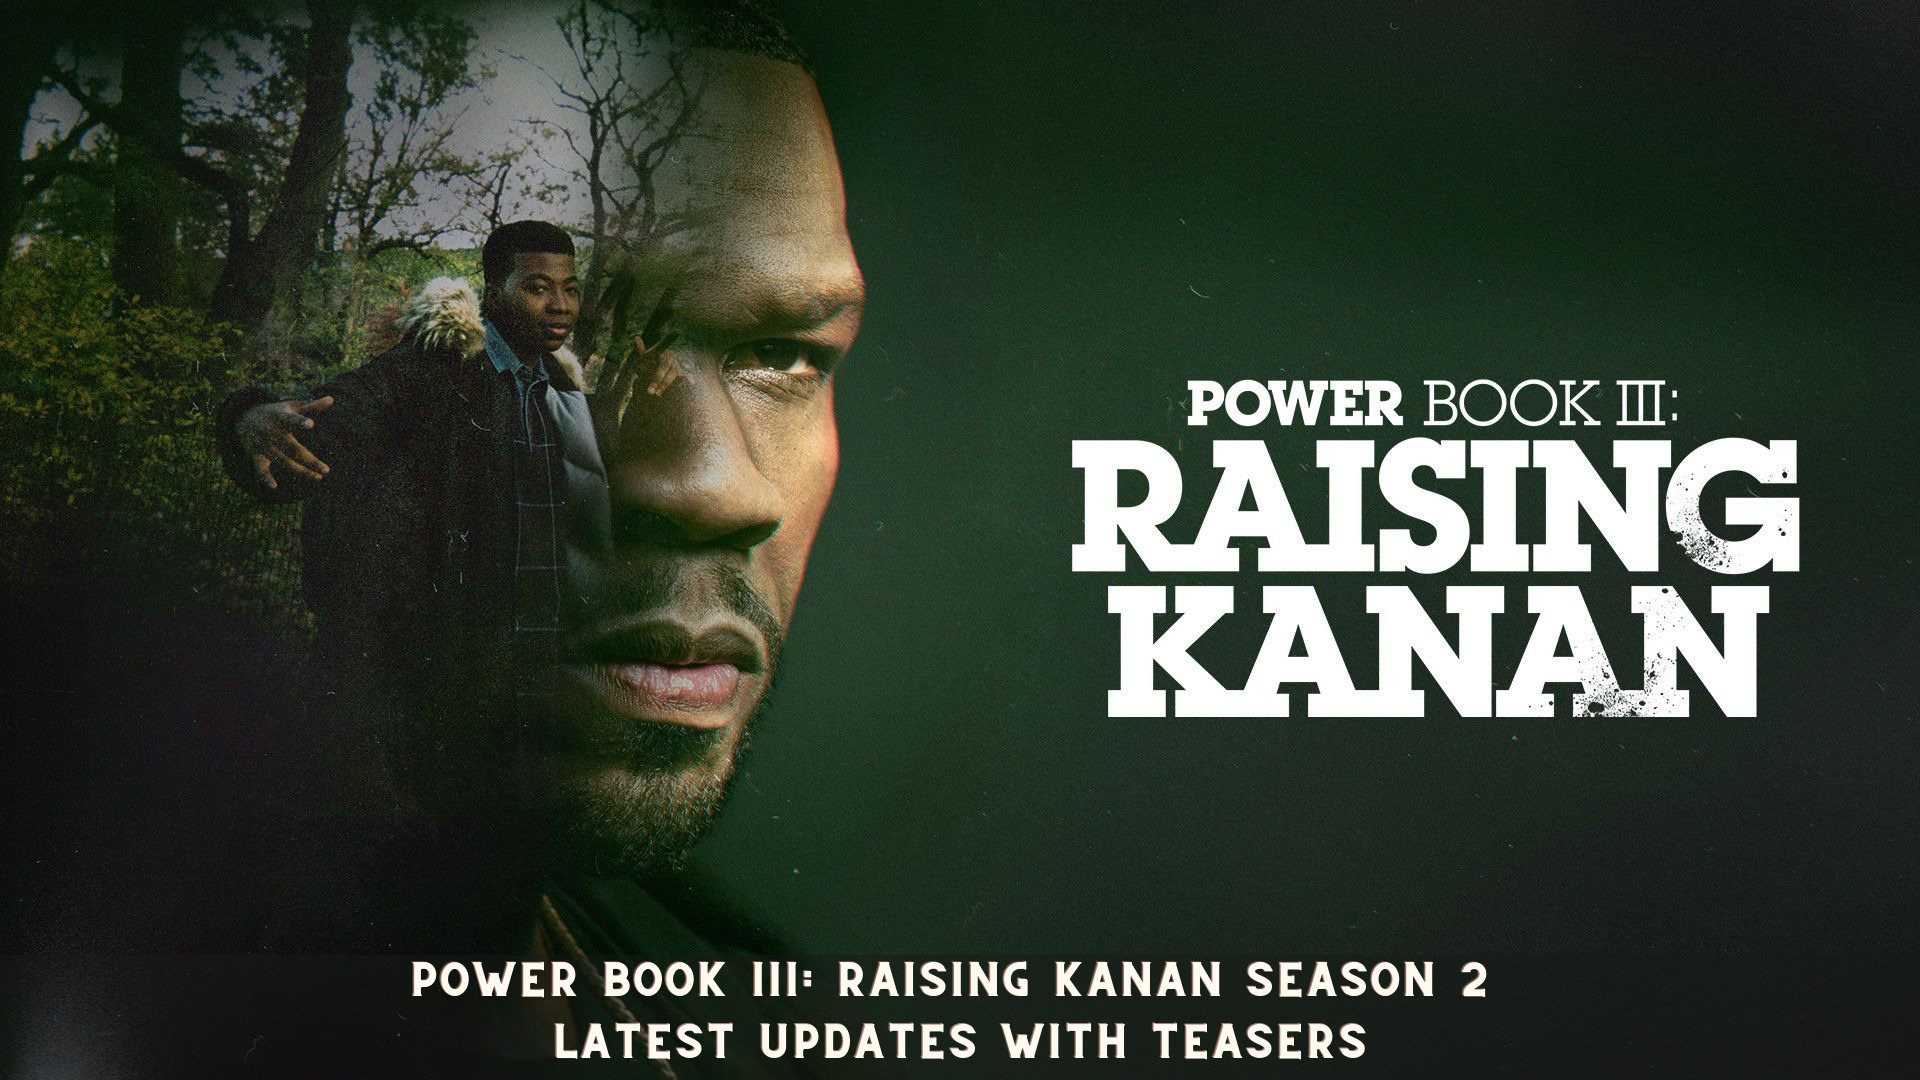 Power Book III: Raising Kanan Season 2 - Latest Updates with Teasers